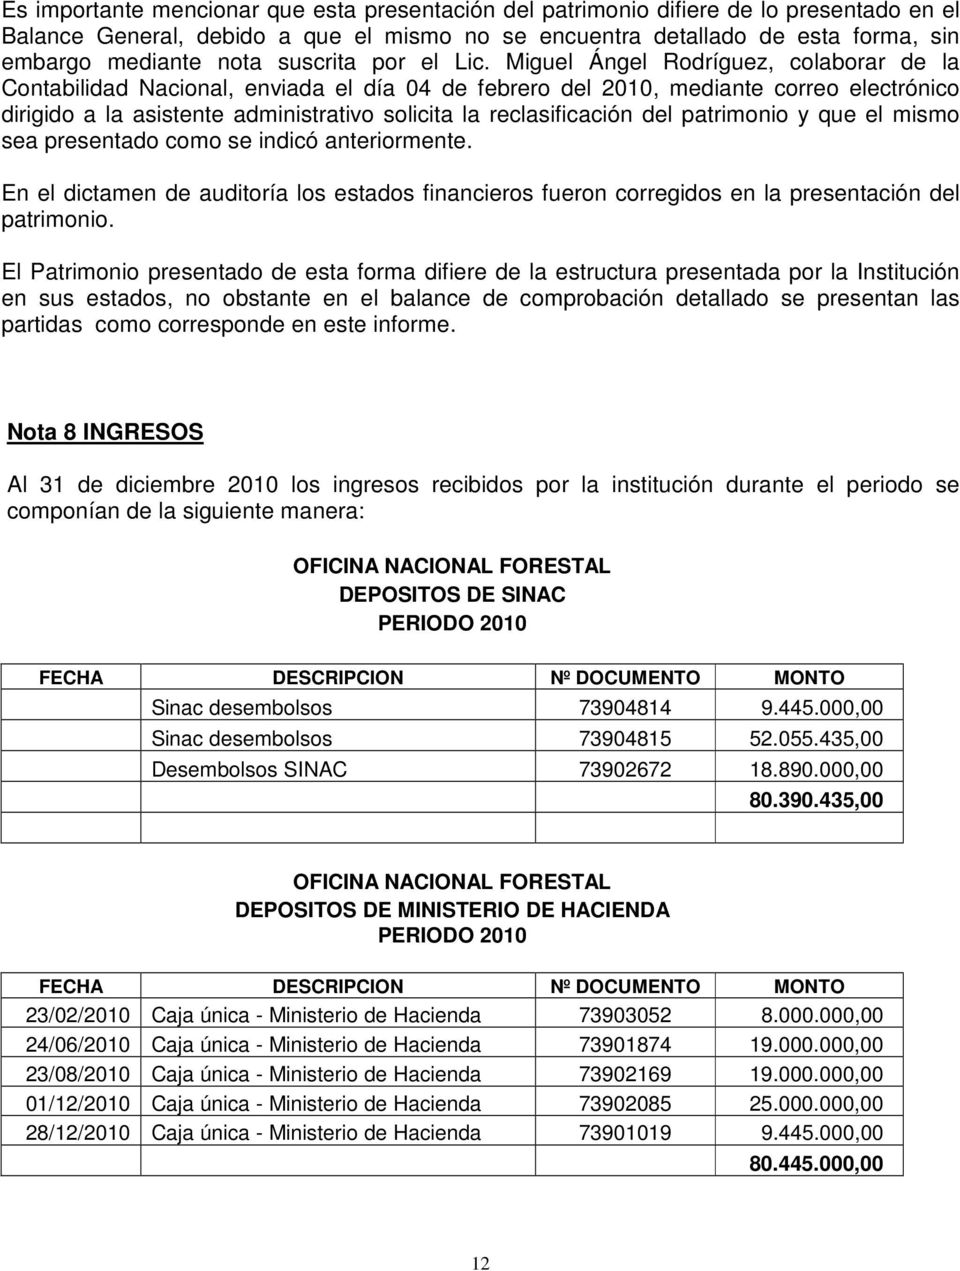 Miguel Ángel Rodríguez, colaborar de la Contabilidad Nacional, enviada el día 04 de febrero del 2010, mediante correo electrónico dirigido a la asistente administrativo solicita la reclasificación